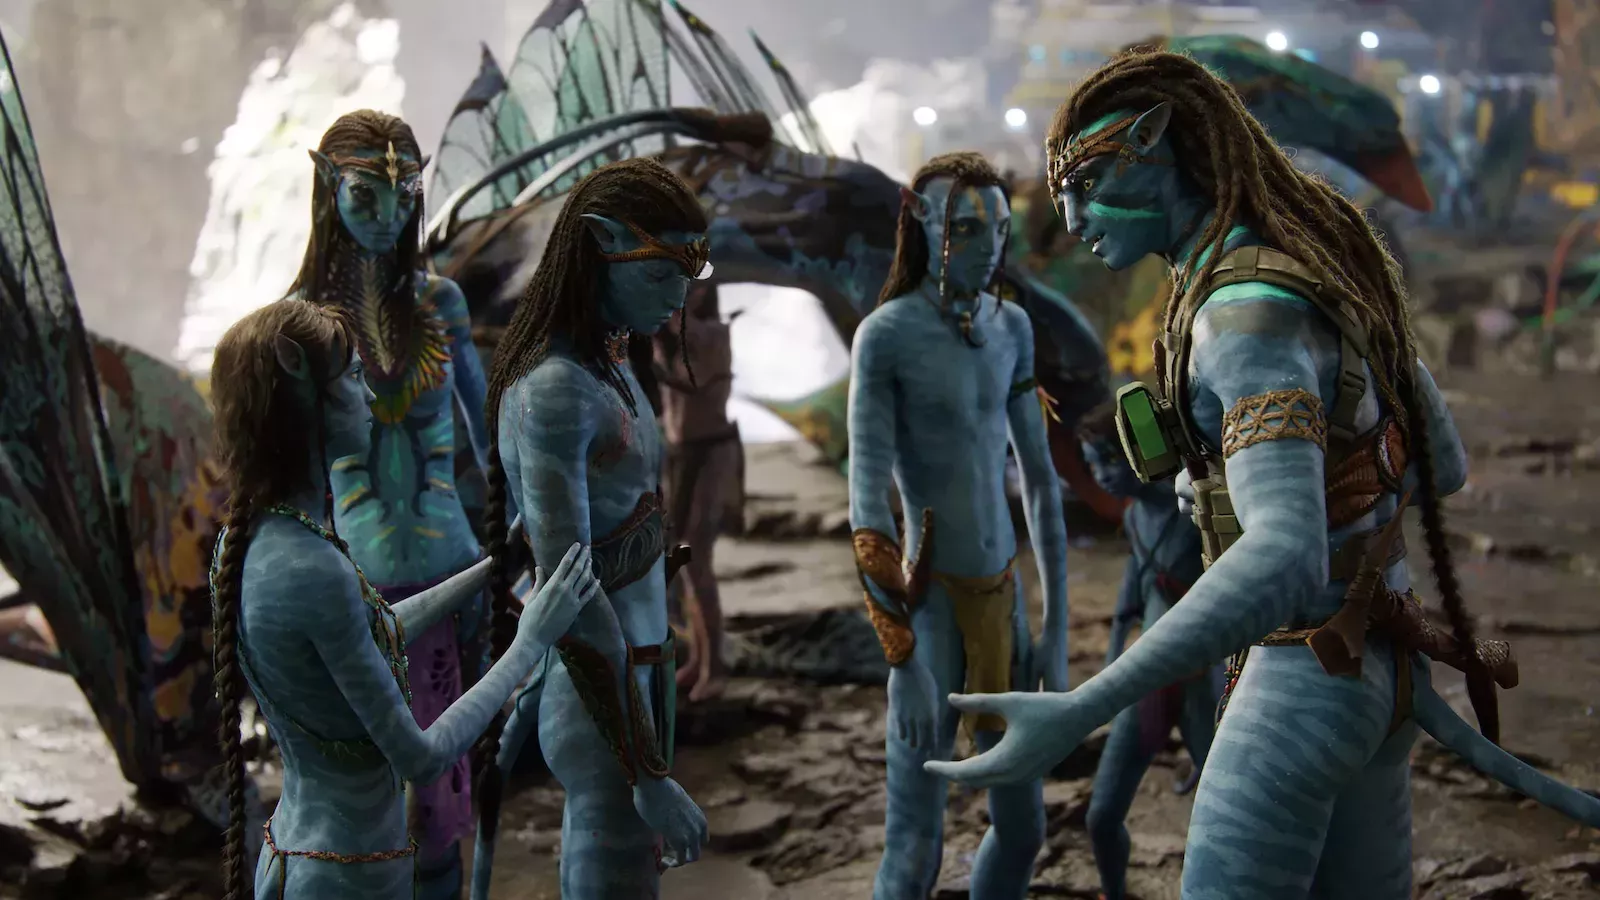 

	
		Avatar: La forma del agua' domina la taquilla del fin de semana de Año Nuevo con una recaudación prevista de 87 millones de dólares en las fiestas
	
	